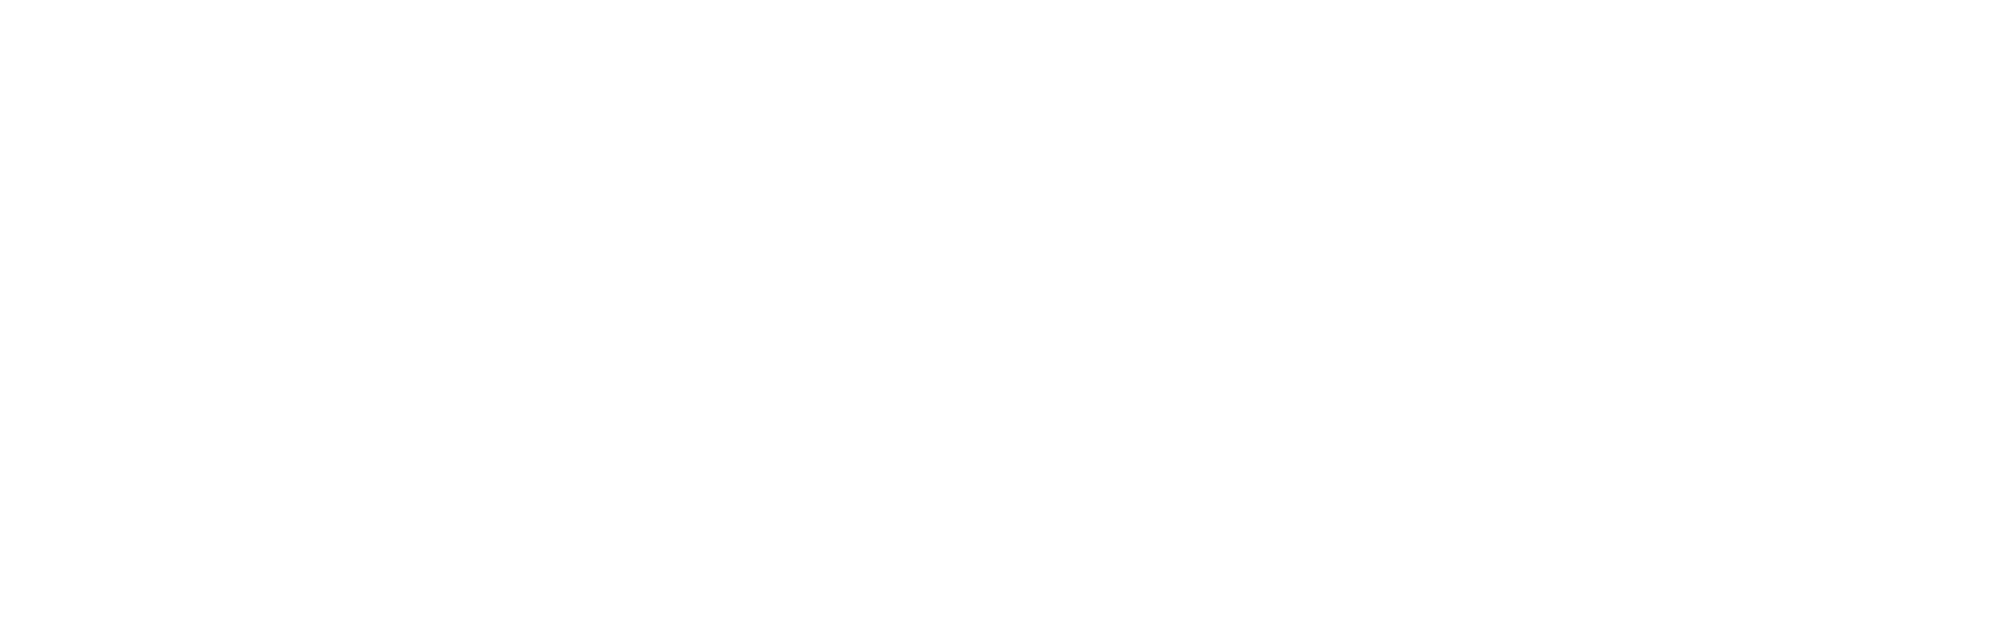 AppDevelopers Logo